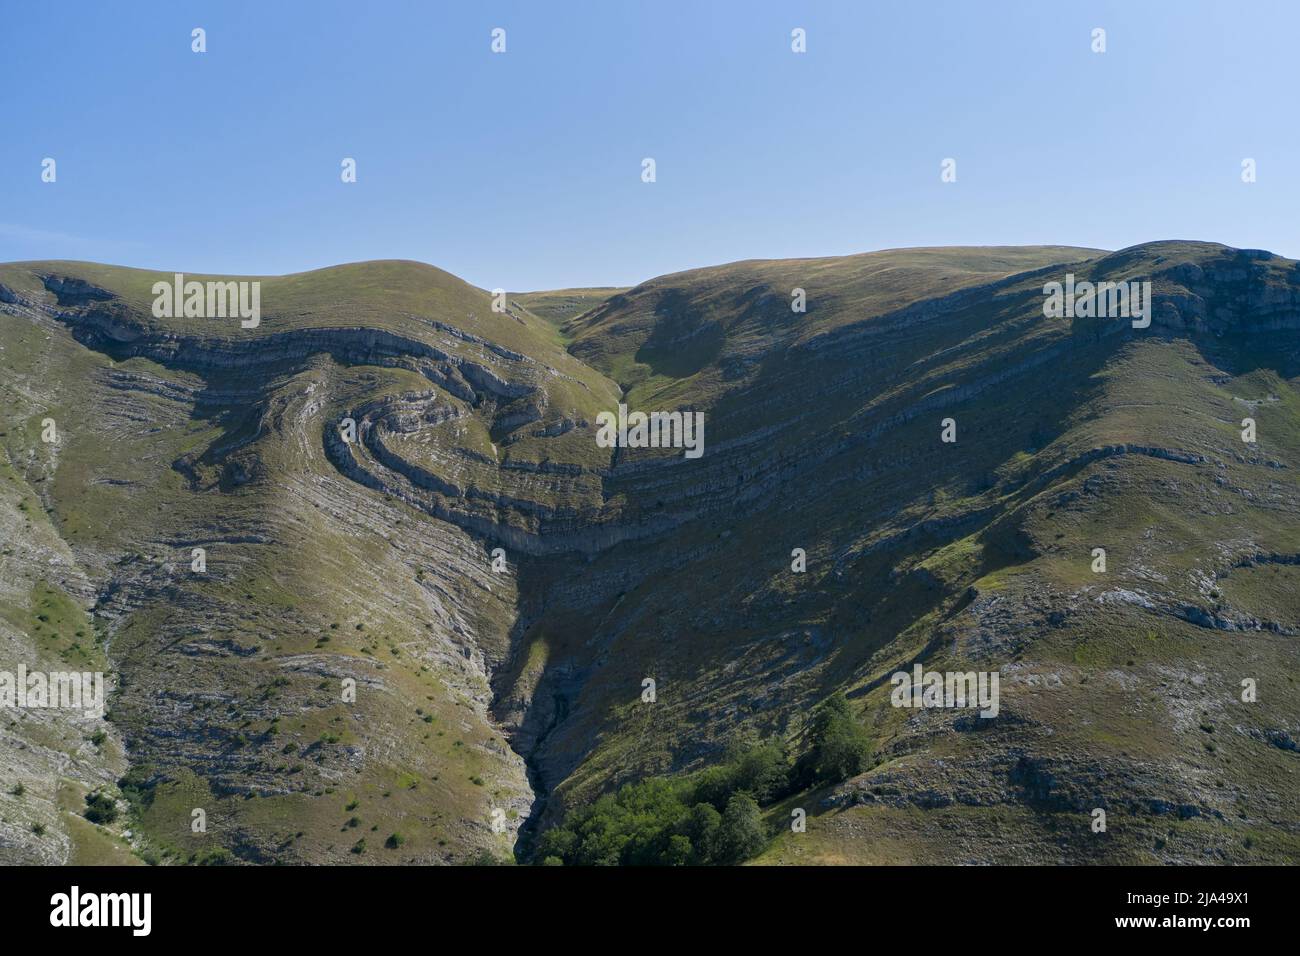 Montagne incroyable avec des couches de roche au Monténégro Banque D'Images